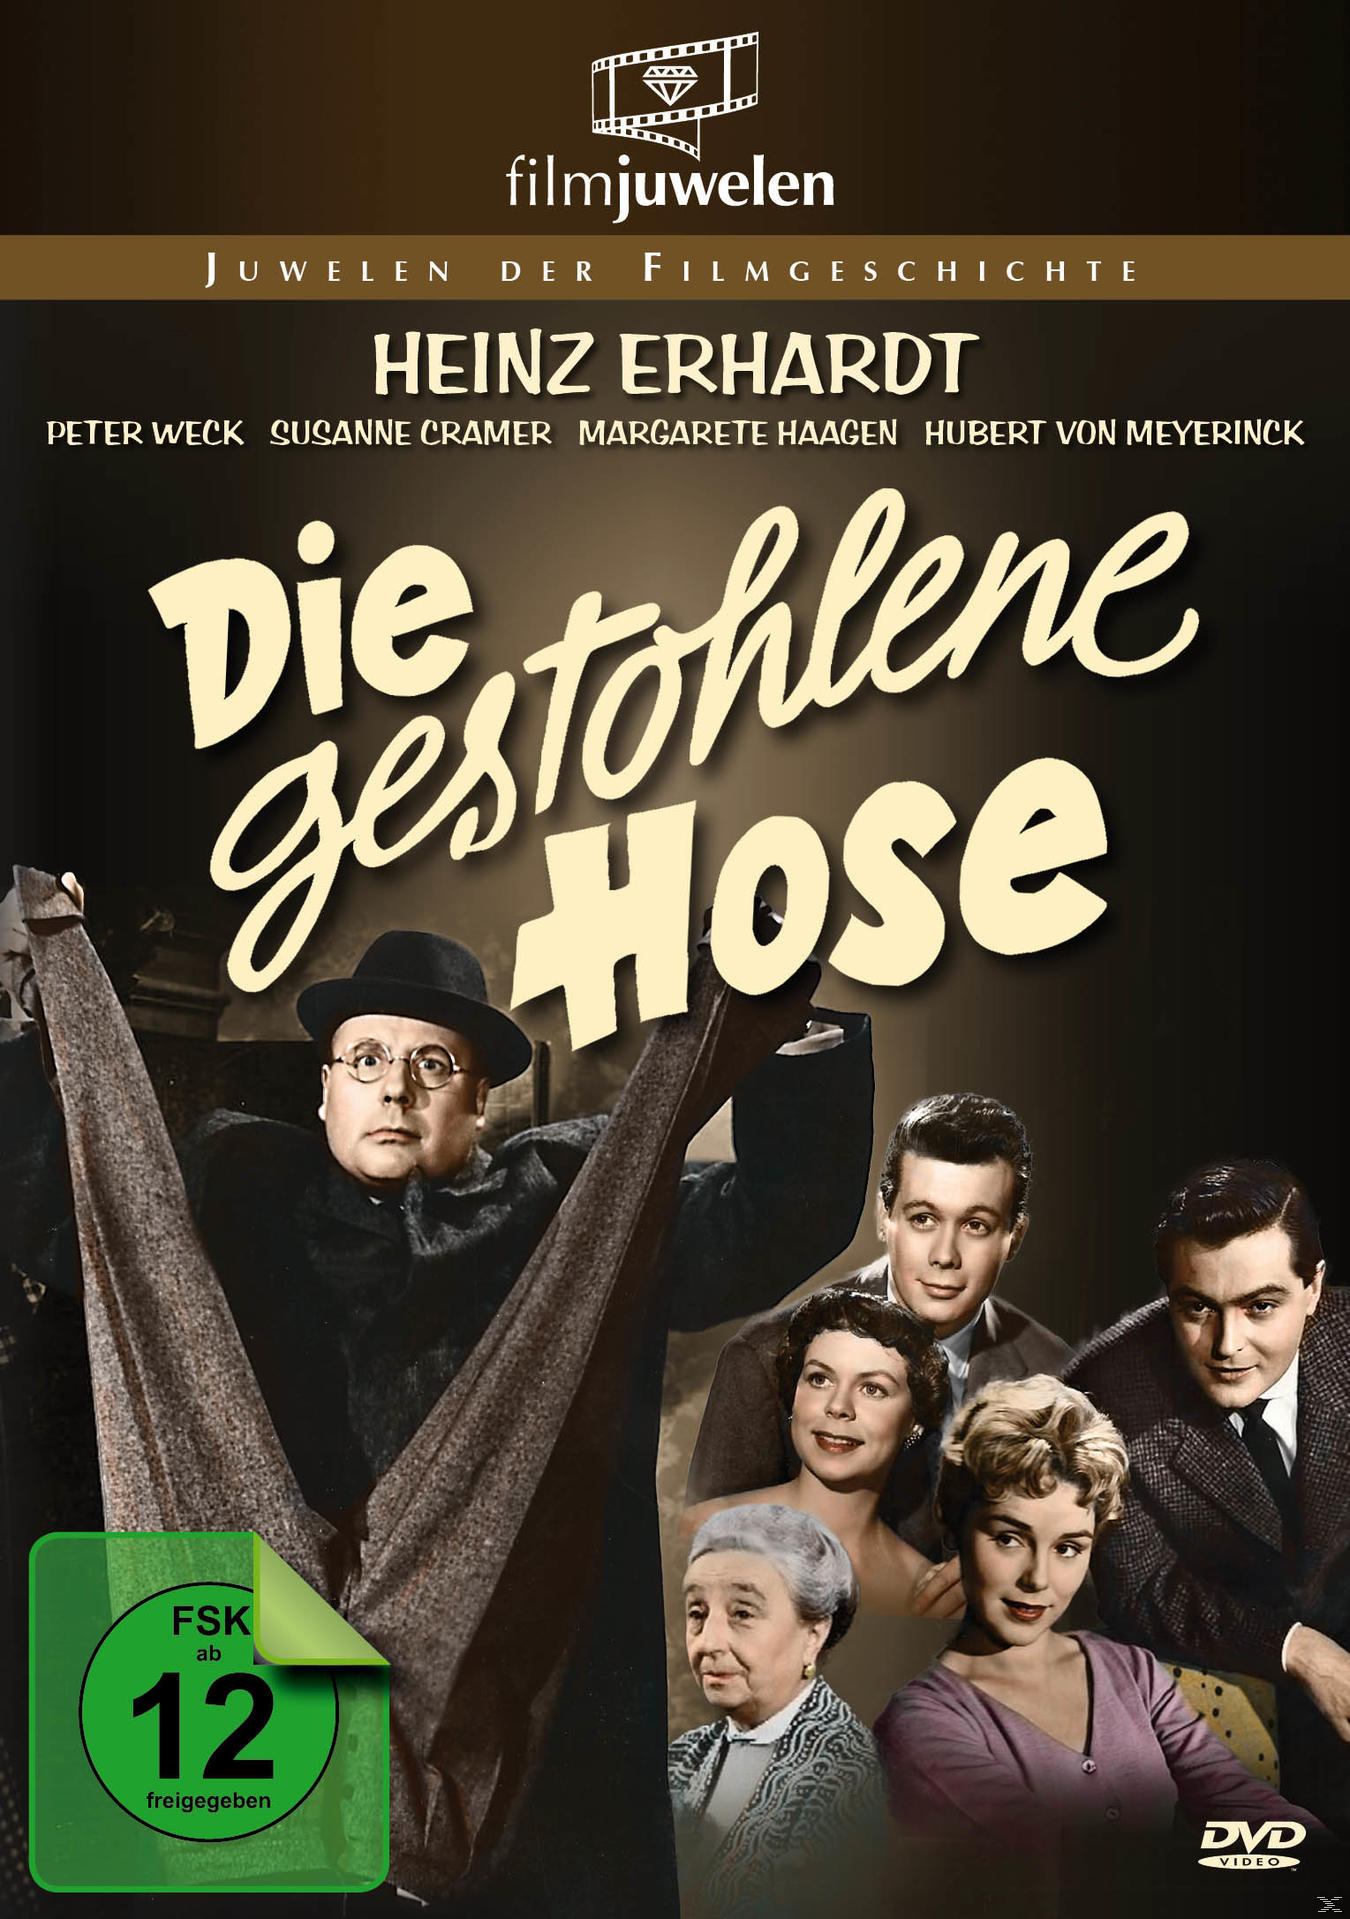 Hose DVD Die Heinz Erhardt: gestohlene